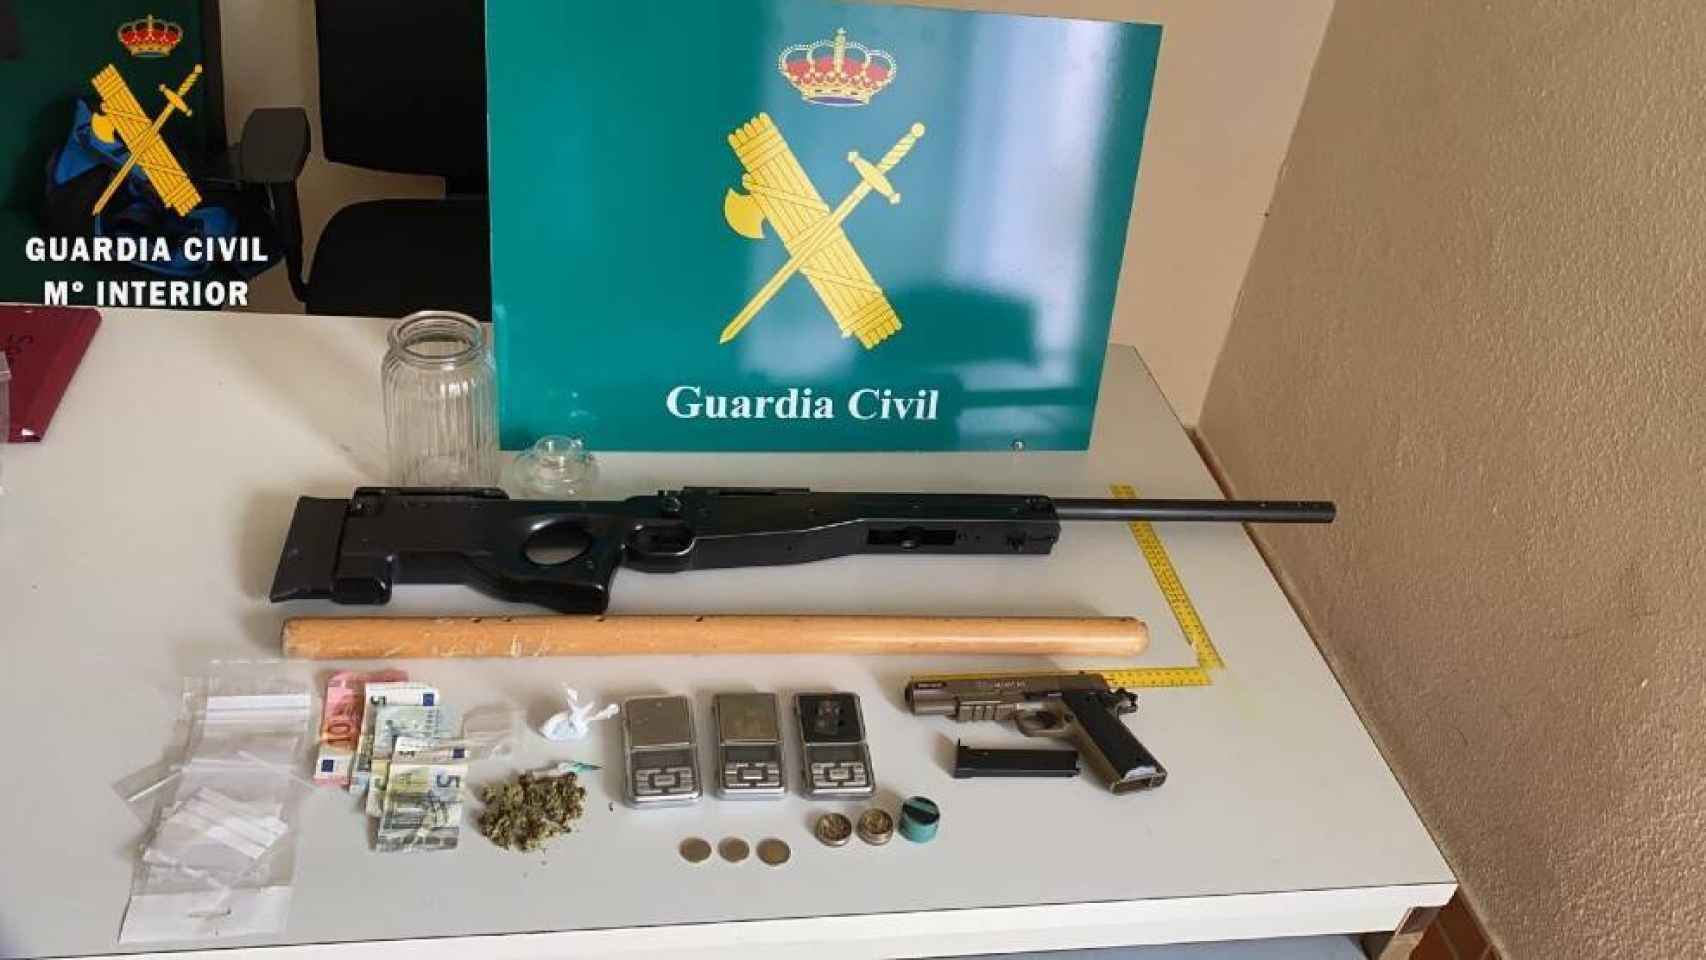 Los efectos intervenidos por la Guardia Civil en Torrijos (Toledo)